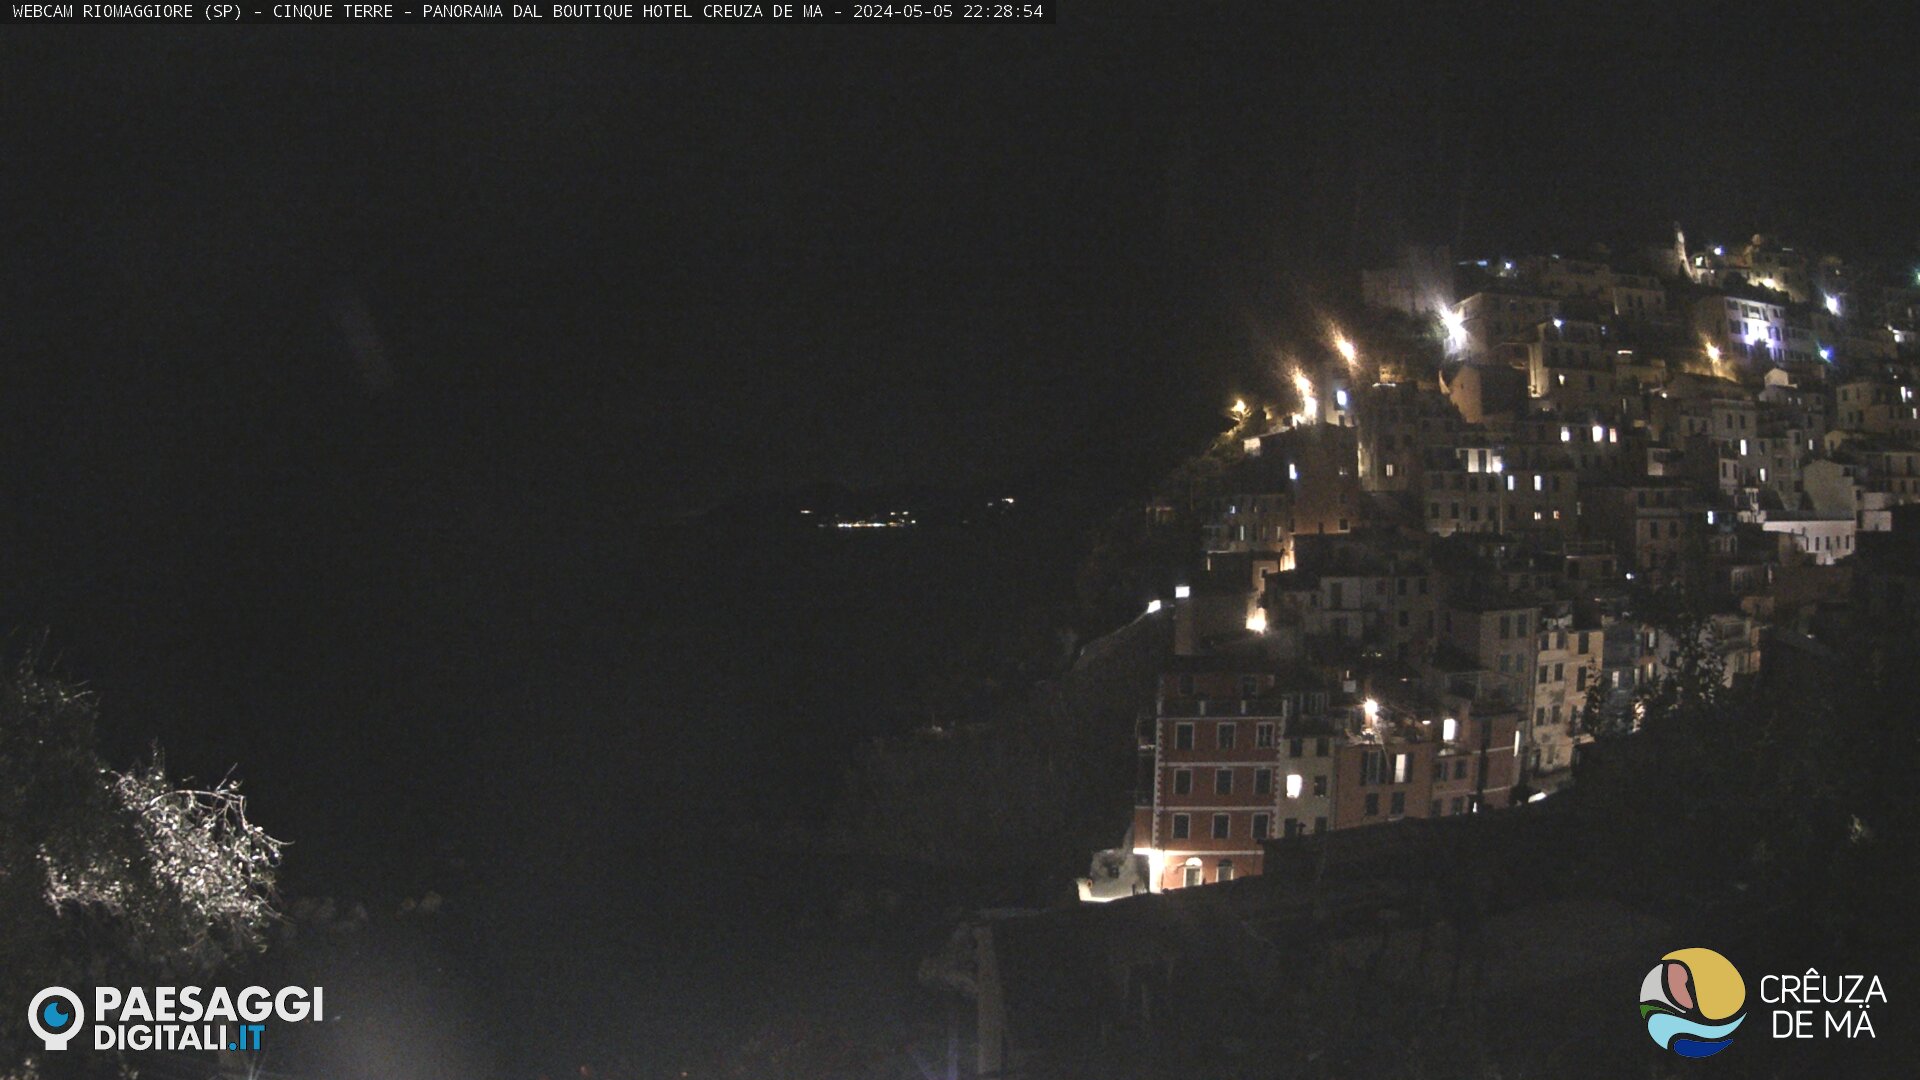 Riomaggiore (Cinque Terre) Sun. 22:31